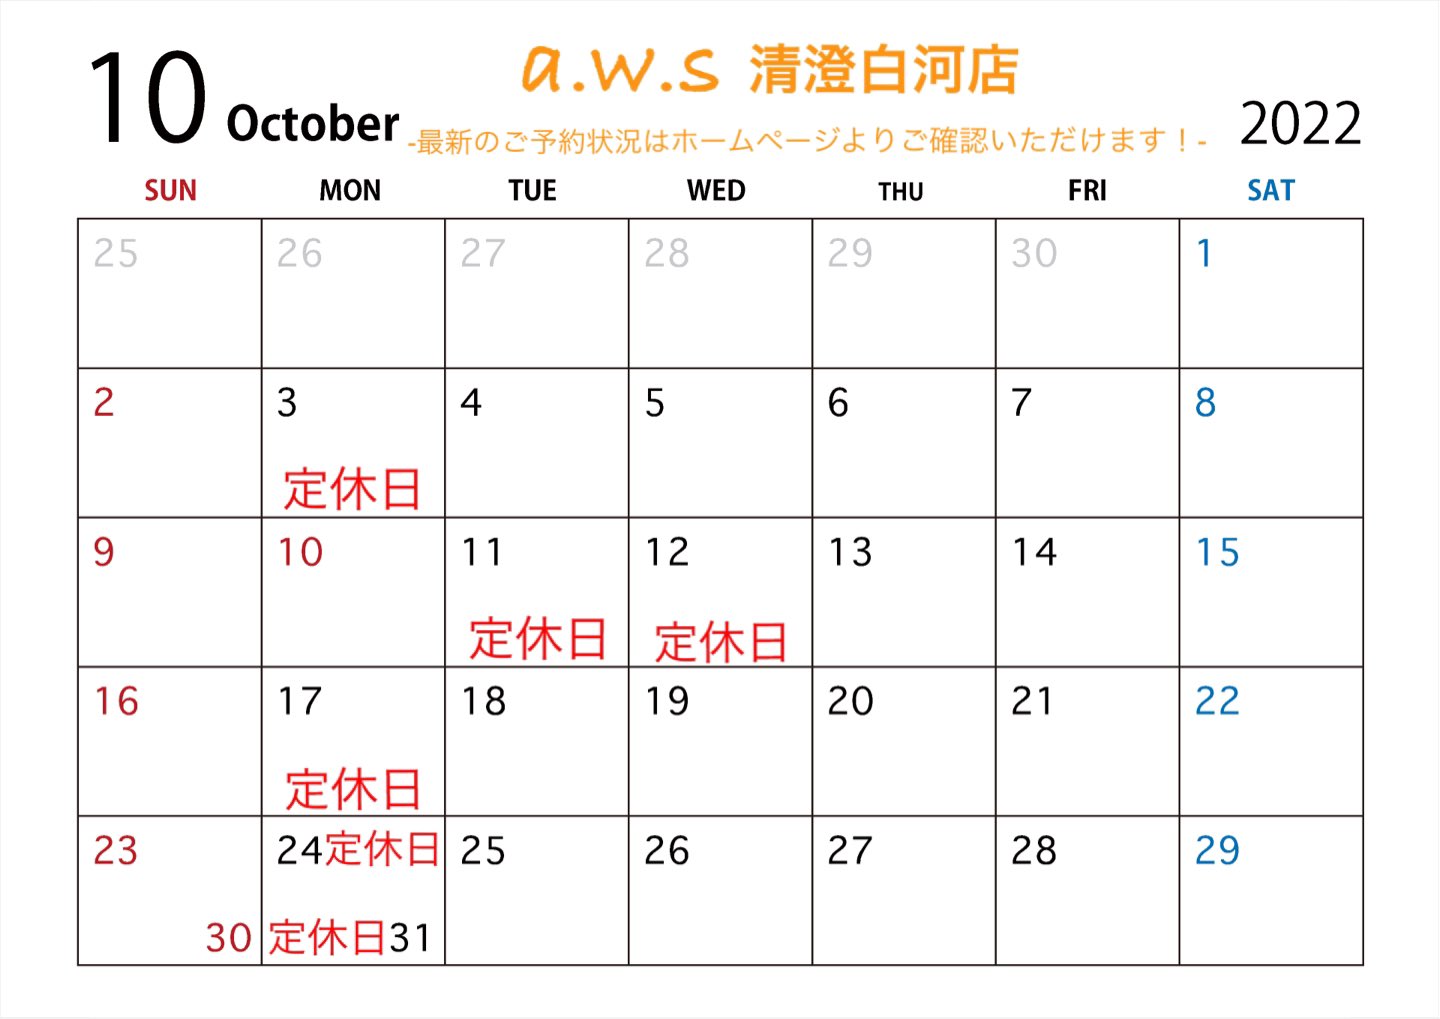 シルバーアクセサリー作りの体験工房a.w.s清澄白河店10月の営業日カレンダー